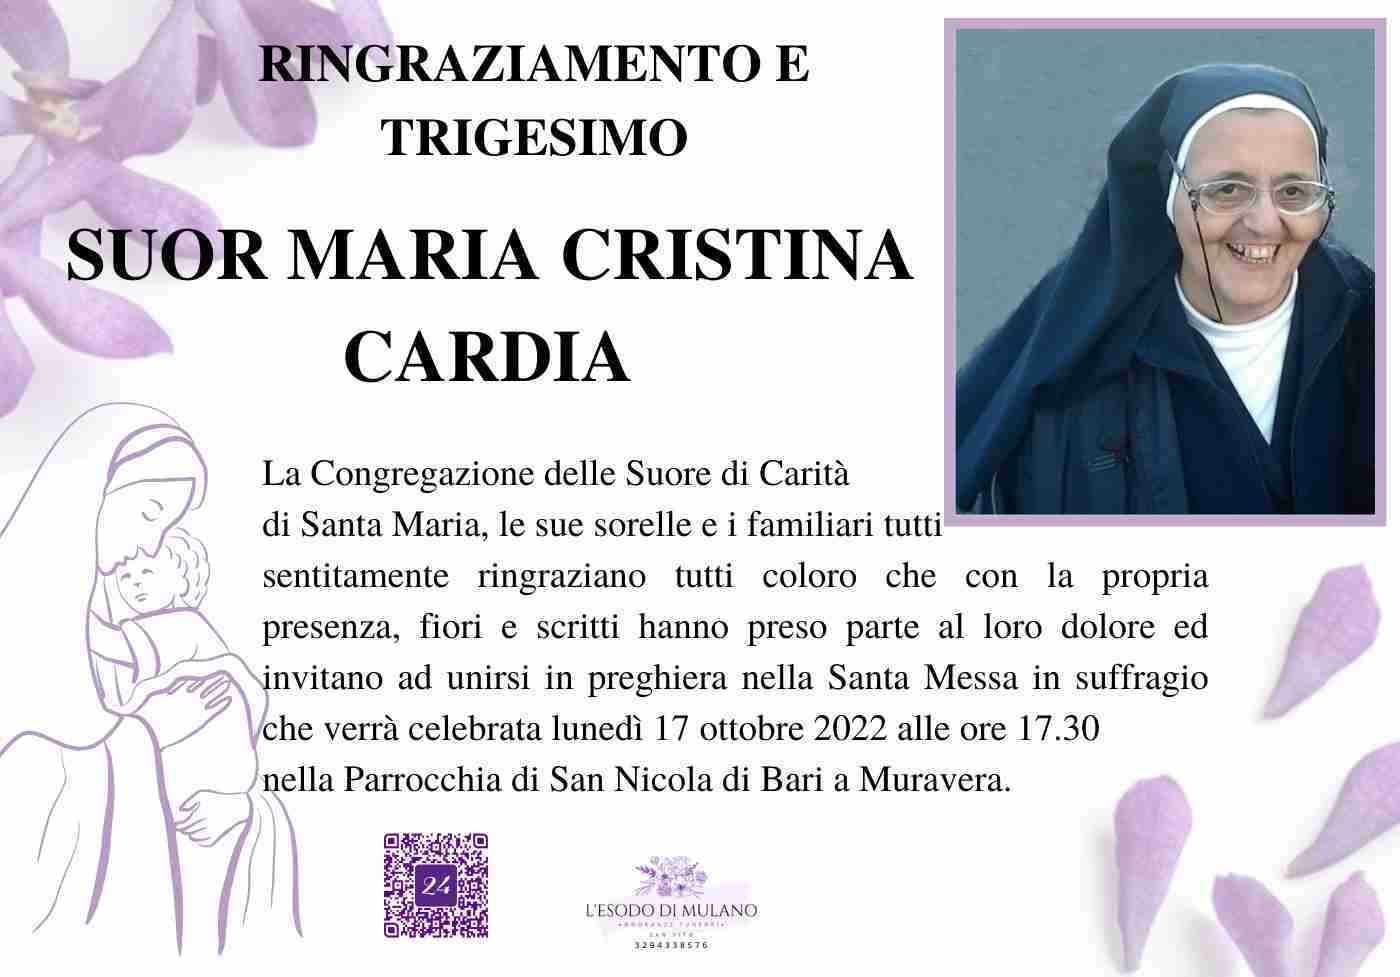 Maria Cristina Cardia